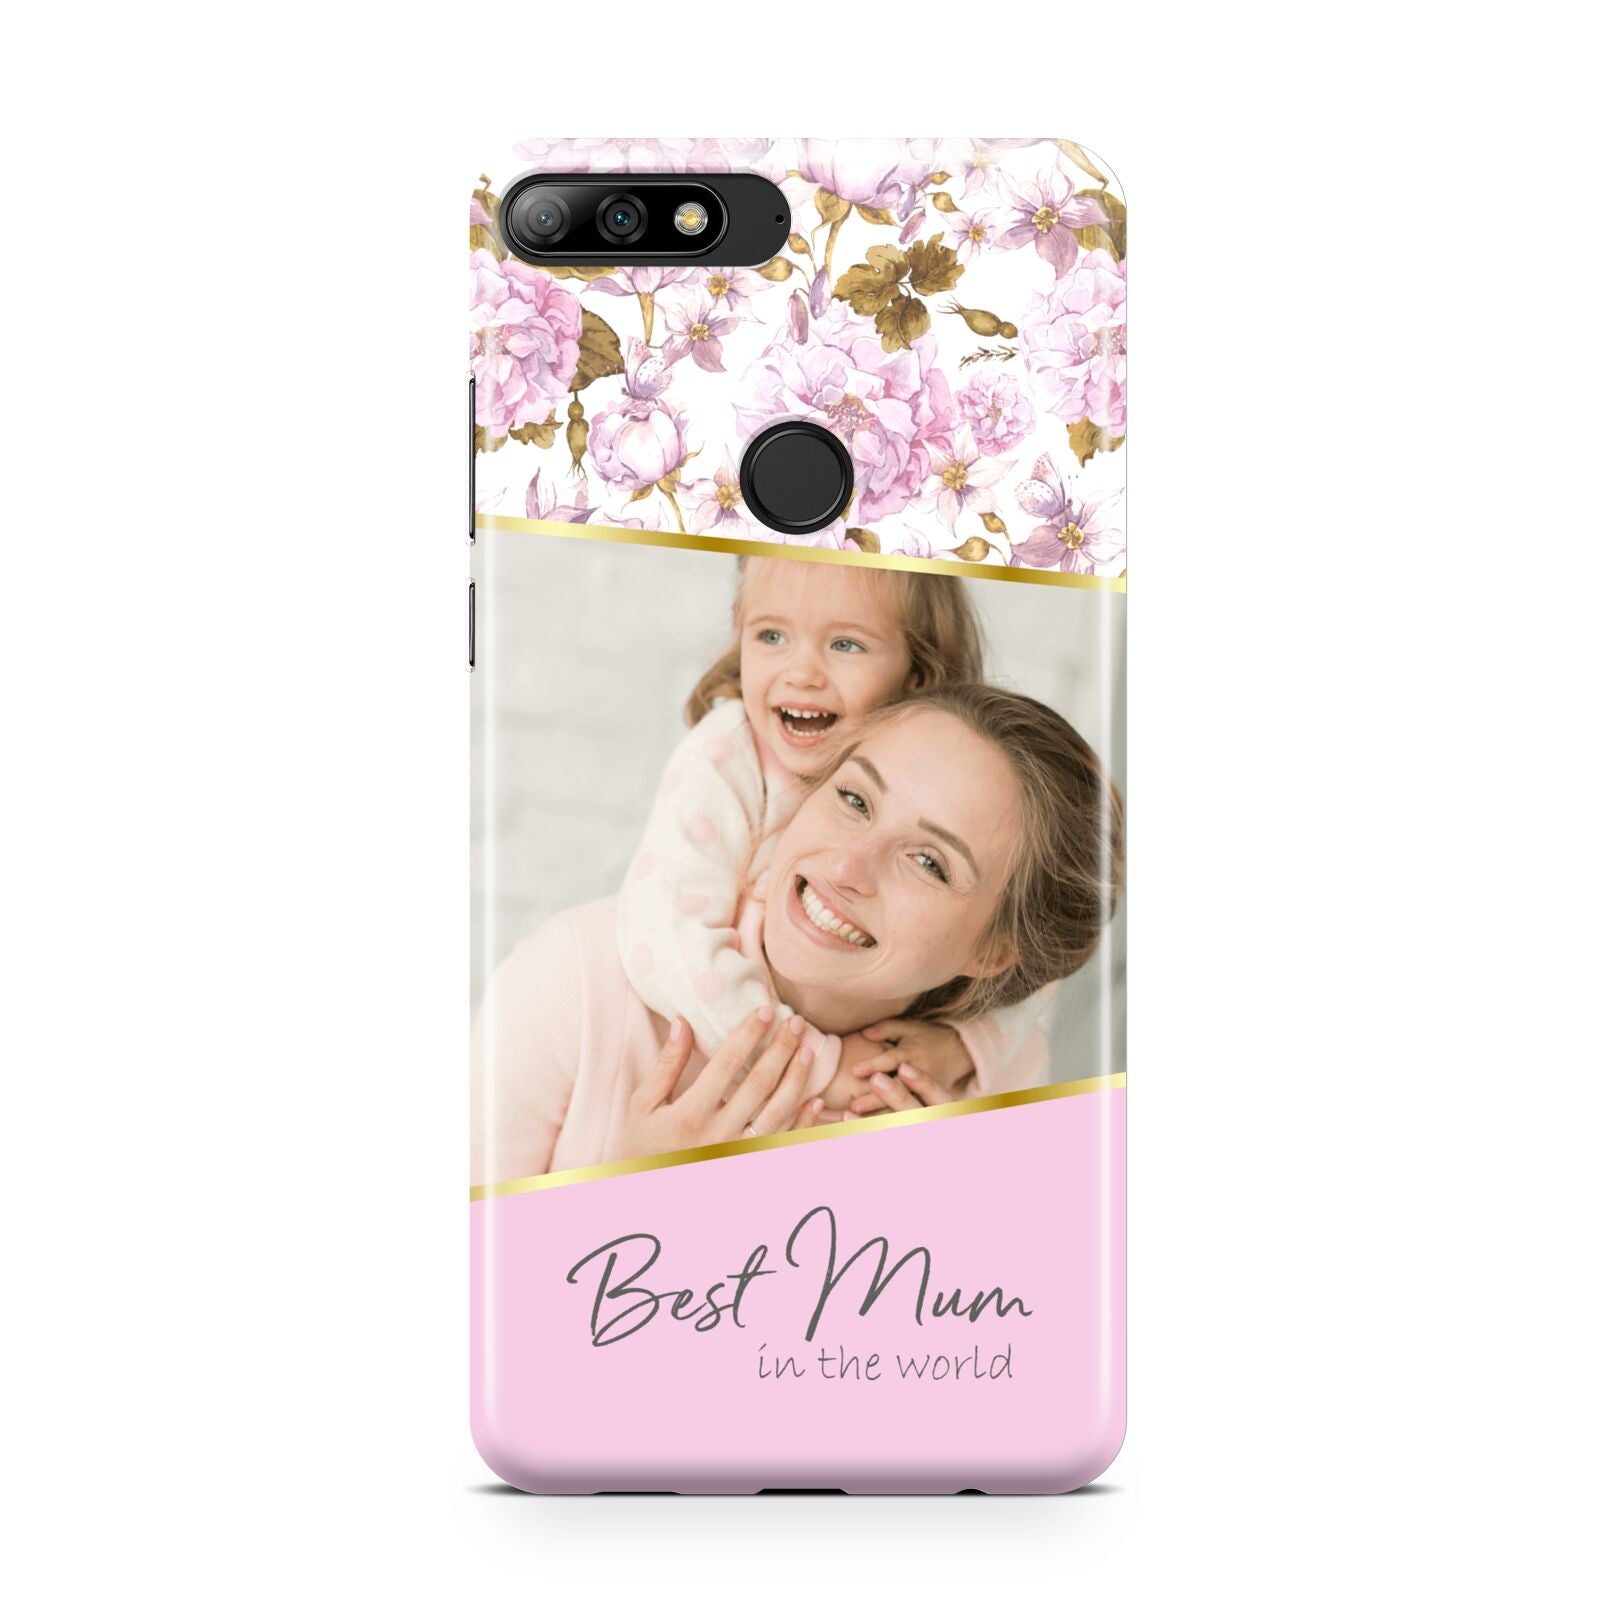 Personalised Love You Mum Huawei Y7 2018